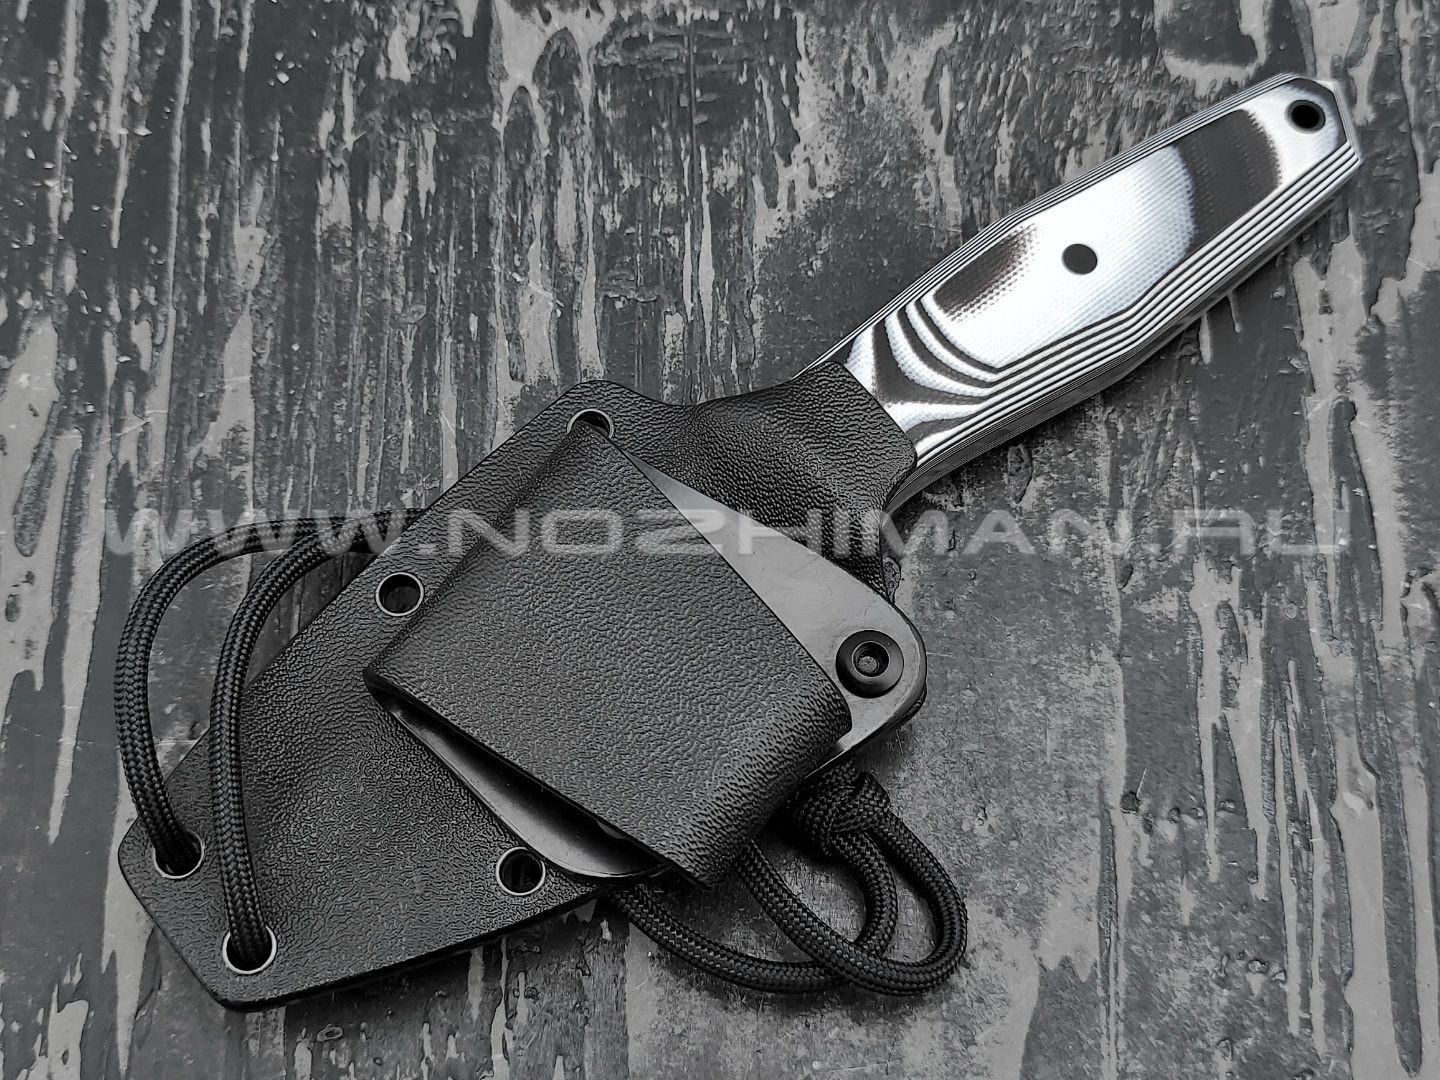 Волчий Век нож "Стрелка" сталь Niolox WA, рукоять G10, карбоновые пины